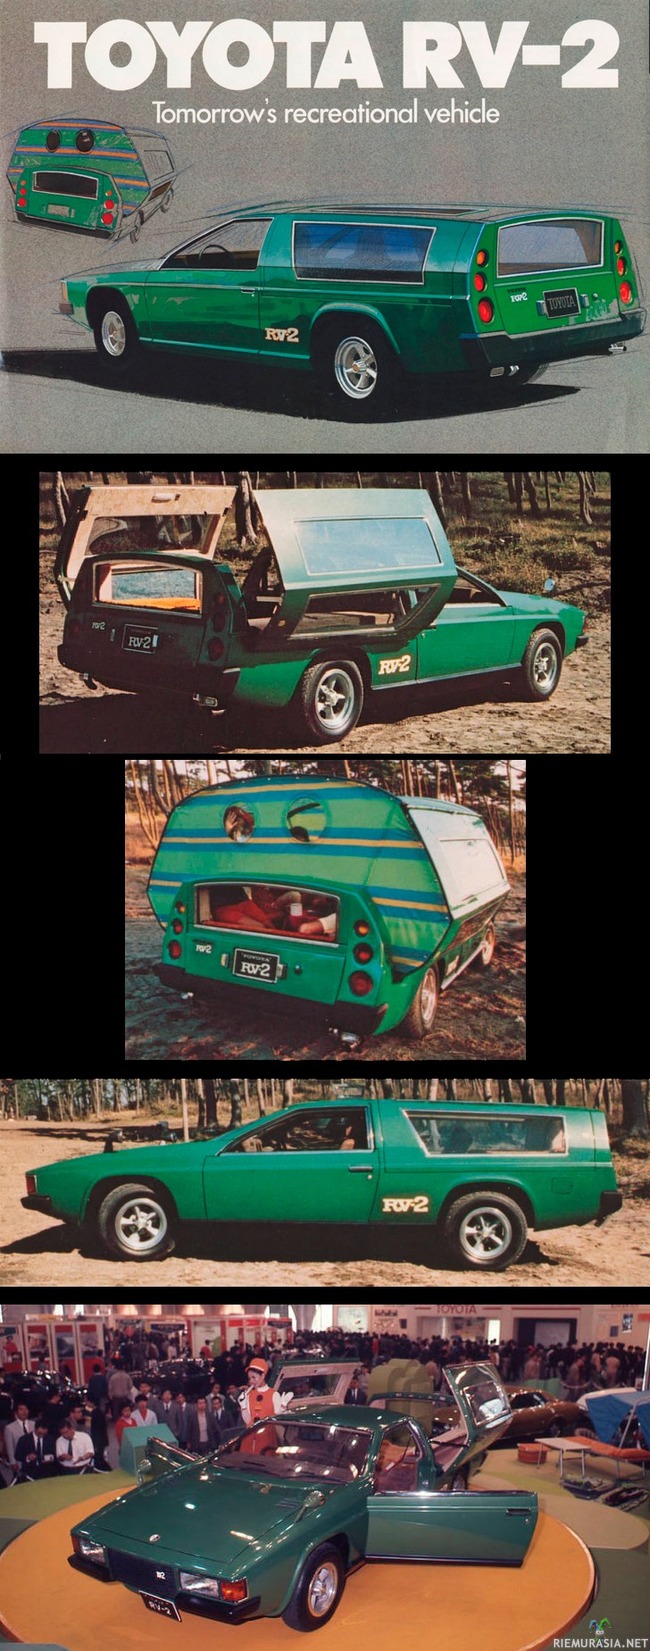 1972 Toyota RV 2 konseptiauto - Toyotan matkailuautokonsepti vuodelta 1972